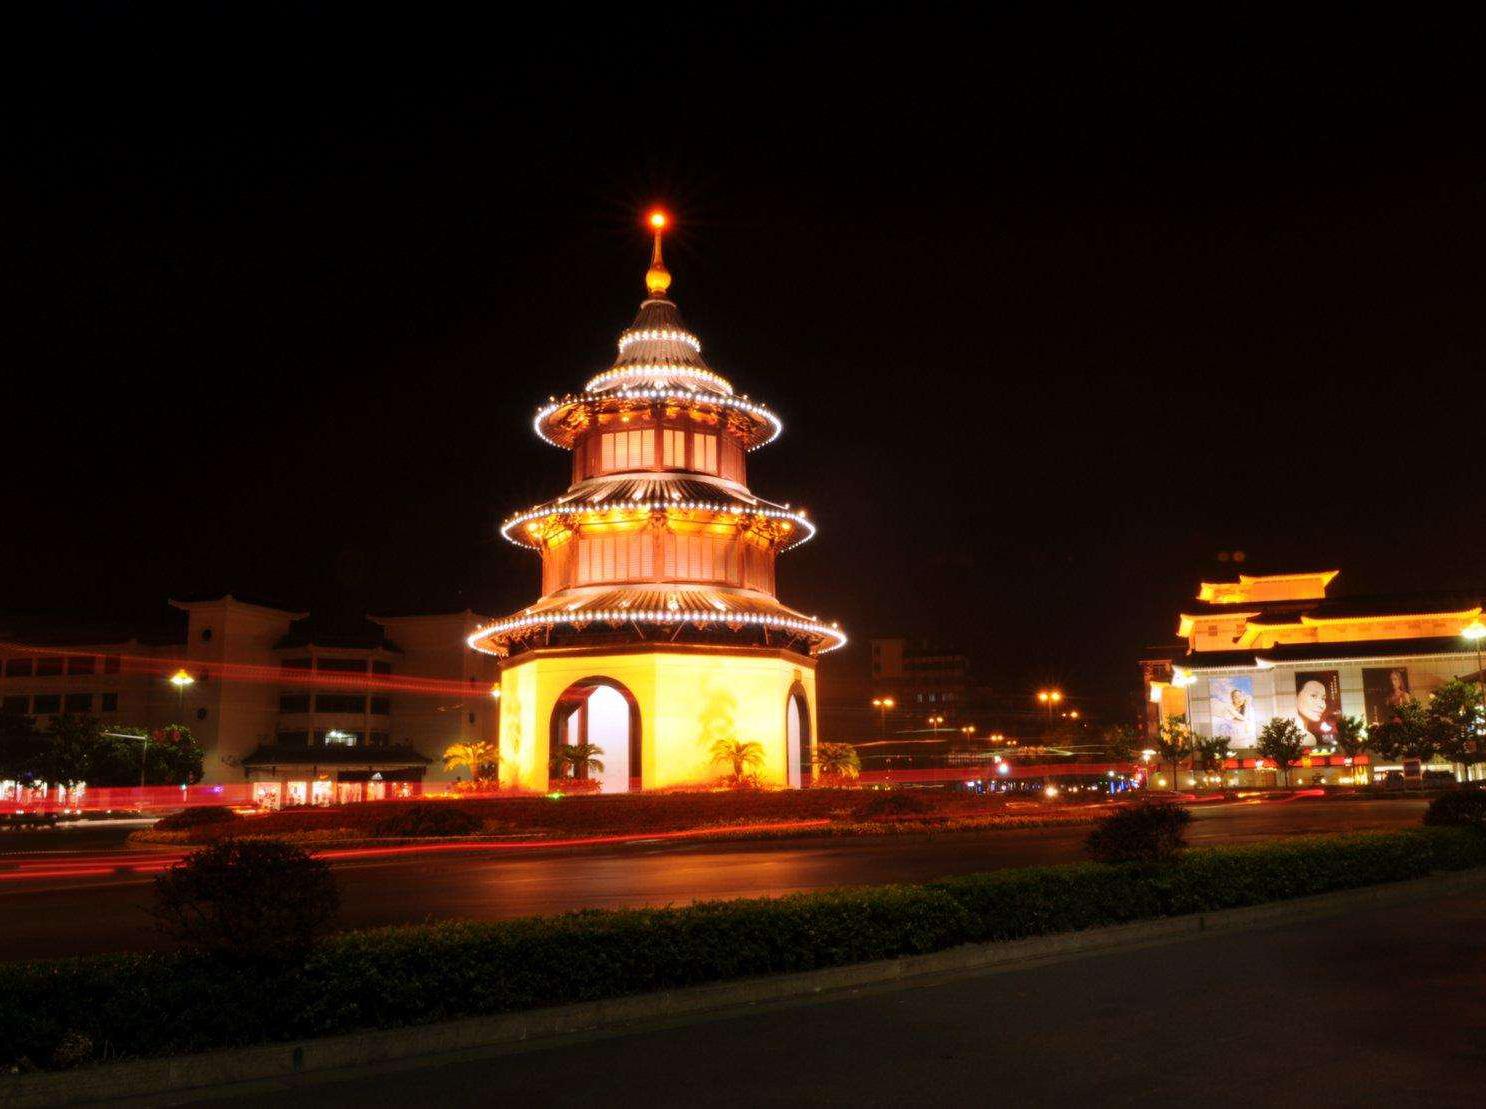 2扬州文昌阁位于汶河路,文昌路交叉处,为江苏省扬州市地标建筑,属于